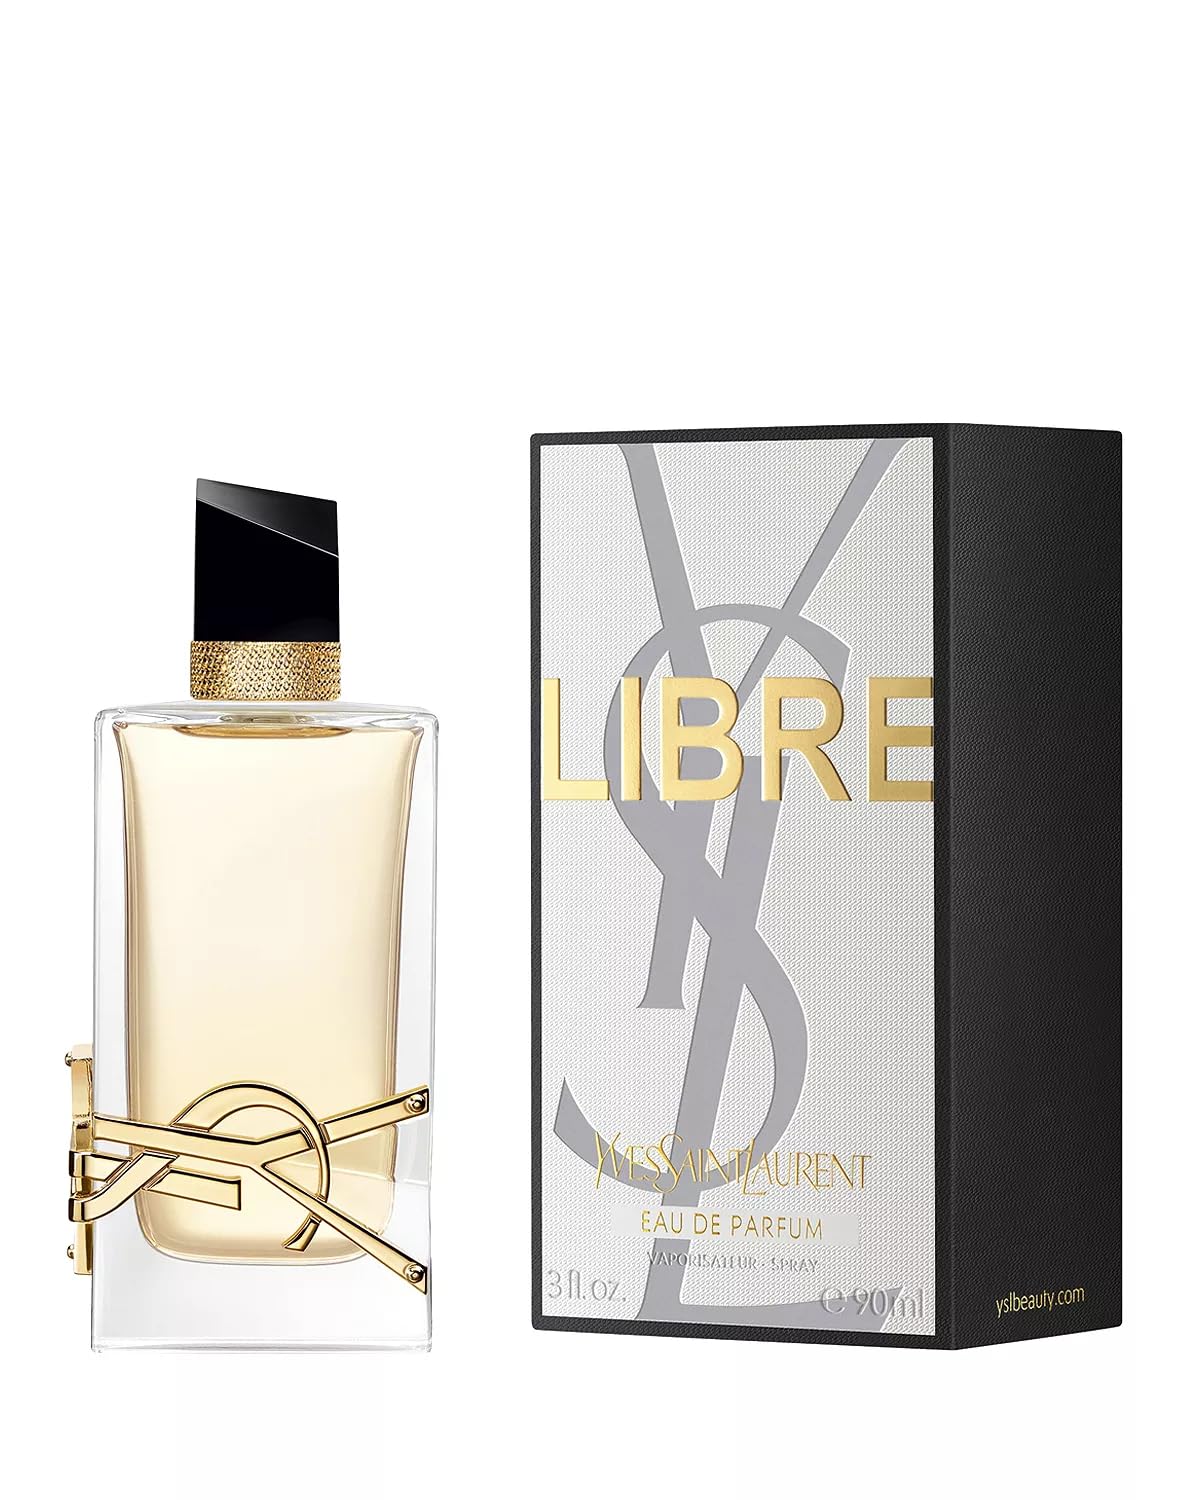 YVES SAINT LAURENT YSL Libre for Women Eau de Parfum Spray, 3.0 Ounce